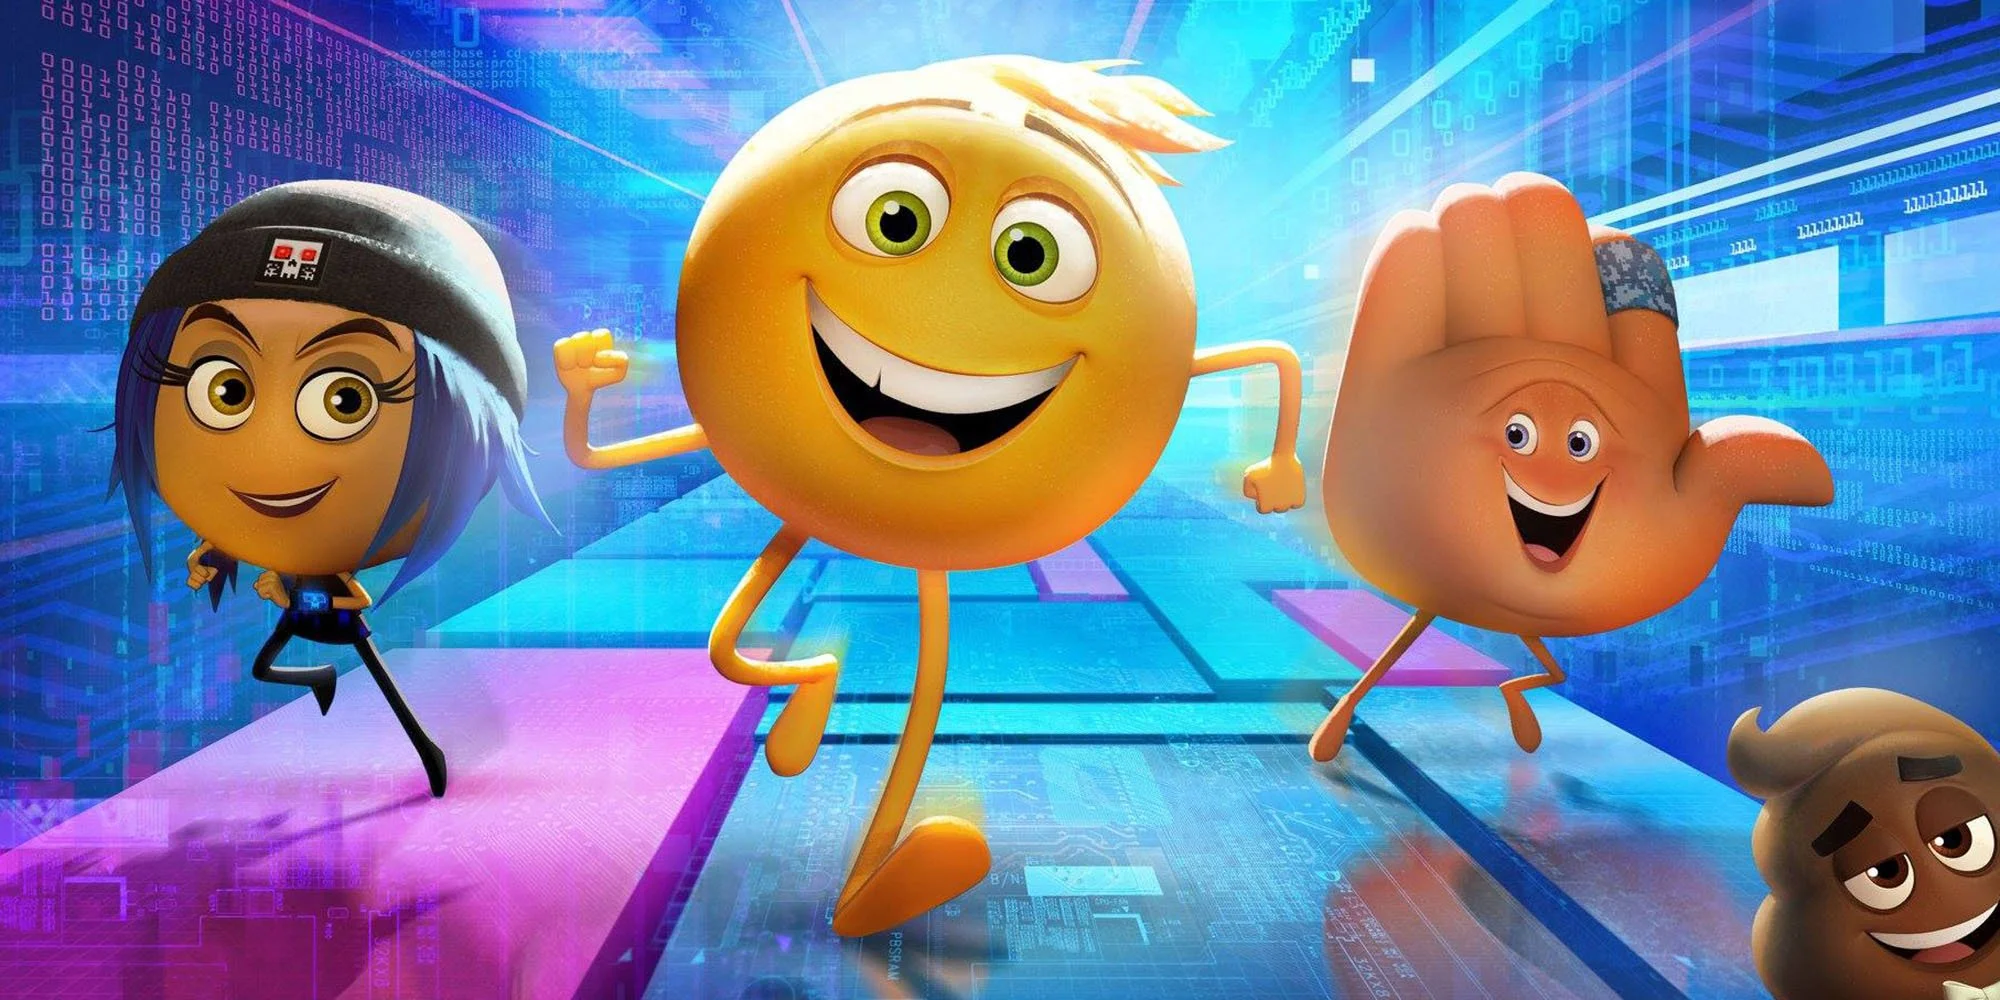 Первый трейлер The Emoji Movie: унылый эмотикон вяло рекламирует фильм - фото 1